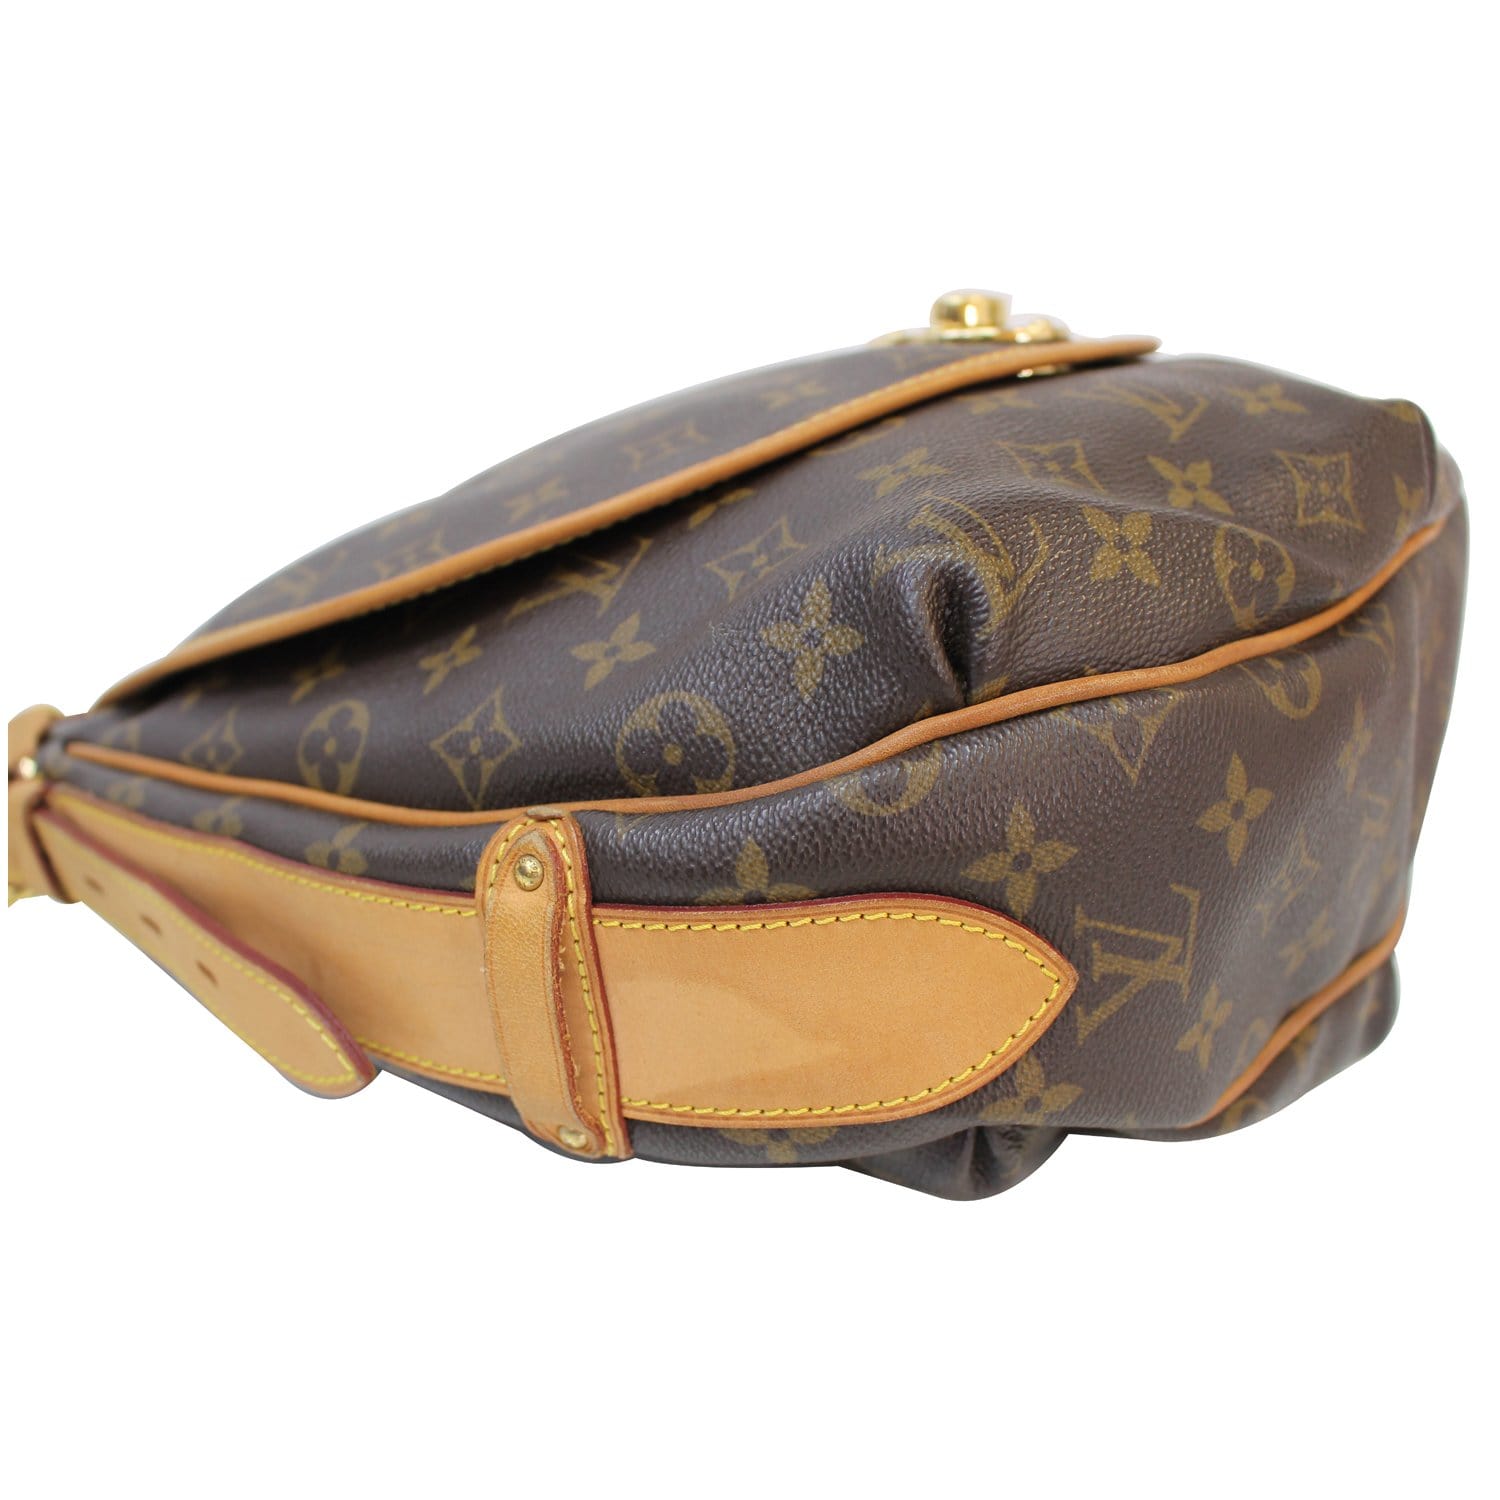 LOUIS VUITTON Tolum GM Shoulder Bag Monogram Leather Brown France M40075  80MX864